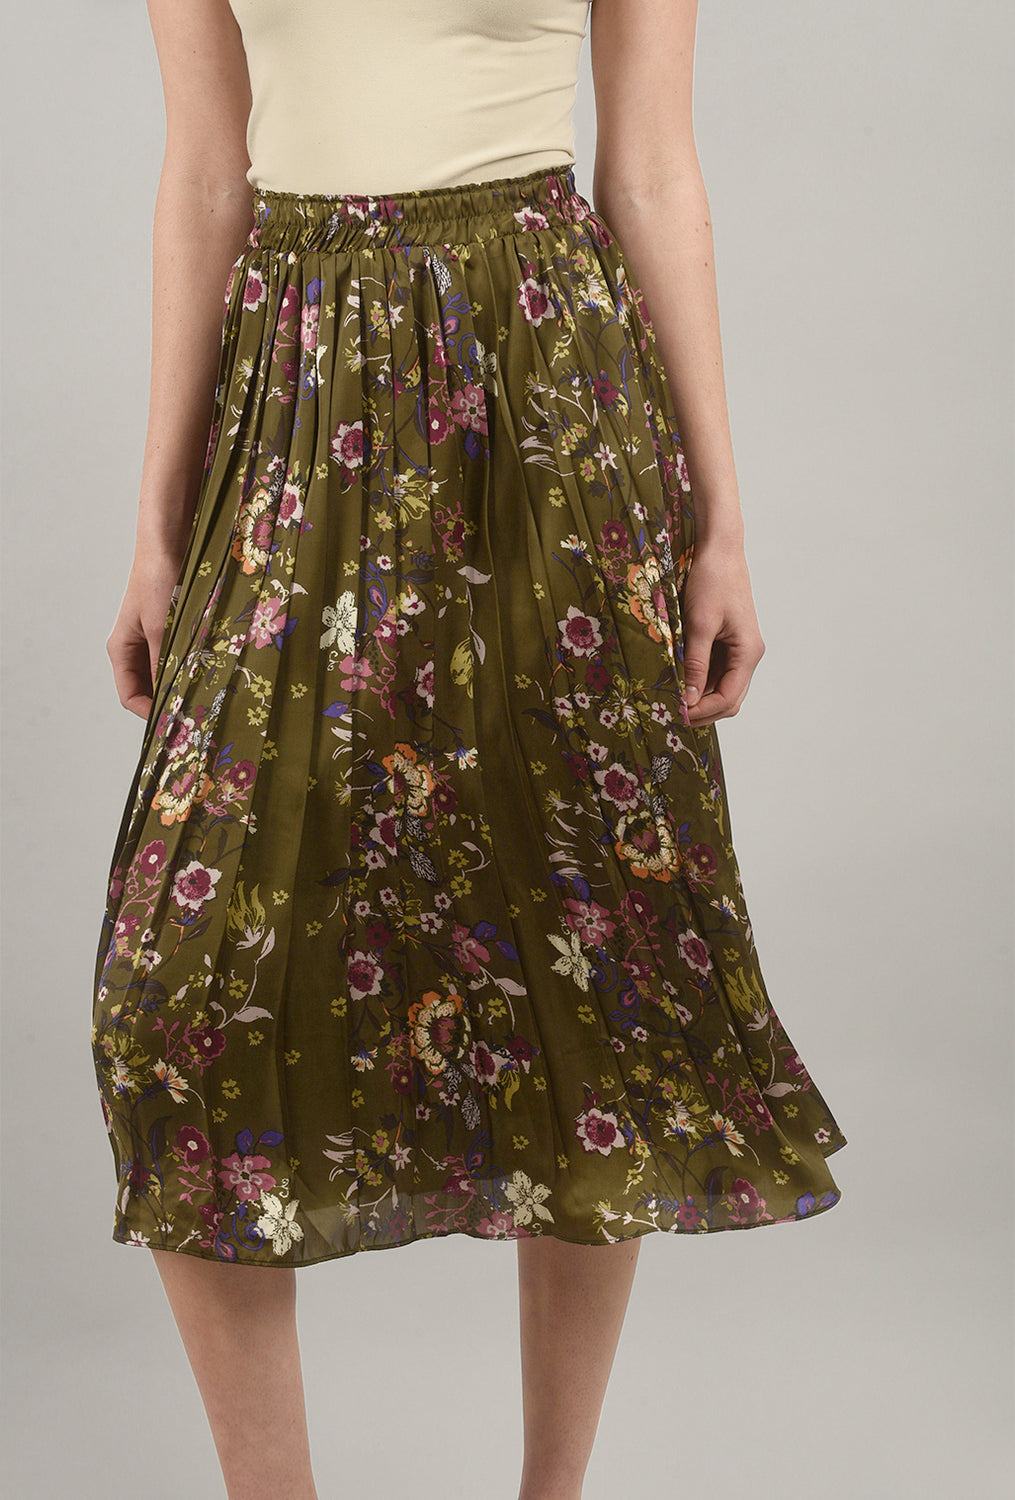 Flower-Print Pleated Skirt, Olive